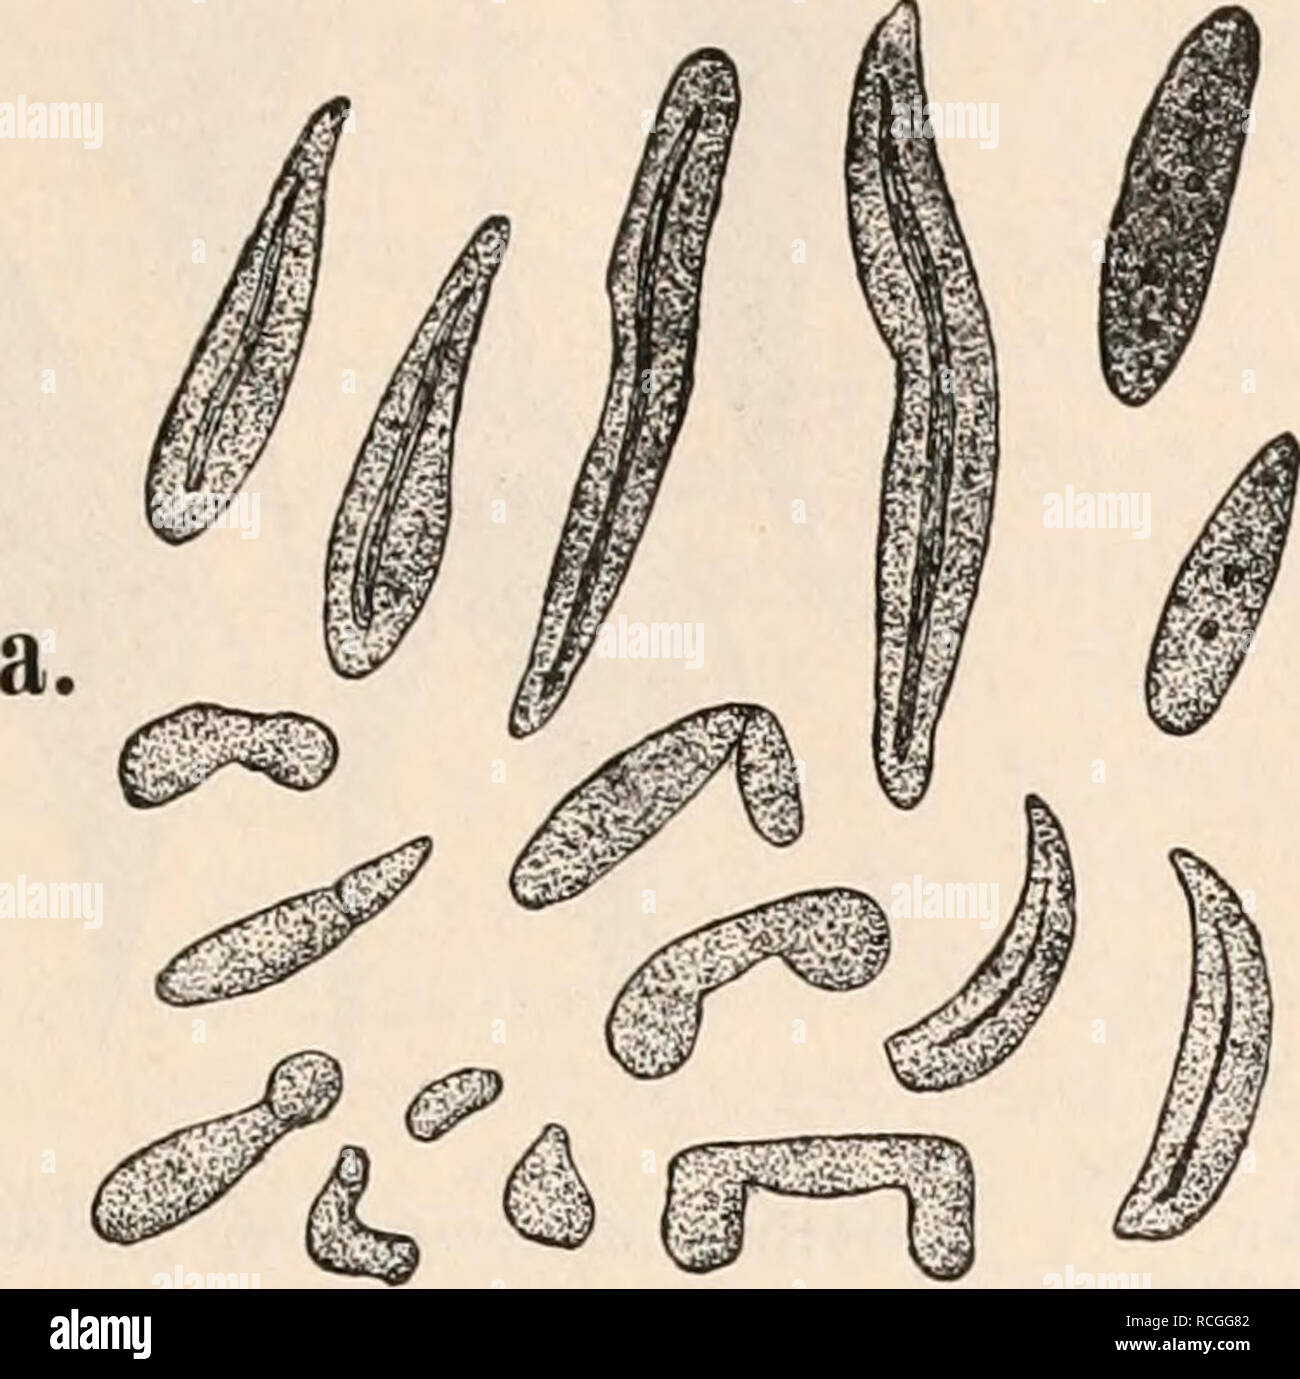 . Die Protozoen als Krankheitserreger : Nachtraege. Protozoa -- pathogenicity; Parasitic Diseases. Ueber Blutparasiten (Serumsporidien) bei blutkörperchenfreien Thieren. 25 beiden Formen fehlt die nadeiförmige Ascospore. Siehe Balbiani: Sur trois ento- phytes nouveaux du tube digestif des, myriapodes, in Journal de l'anat. et. physiol. von Pouchet. XXV. 1889. pag. 30. Fig. 13 a, h.. a. Monospora bicuspidata Metschni ko f f (?) mit nadeiförmiger Ascospore, aus Gammarua pulex. b. G-lugeasporoblast von Gammarus, zum Vergleich. Bütschli beschreibt in seinen Studien über die ersten Entwickelungsvor Stock Photo